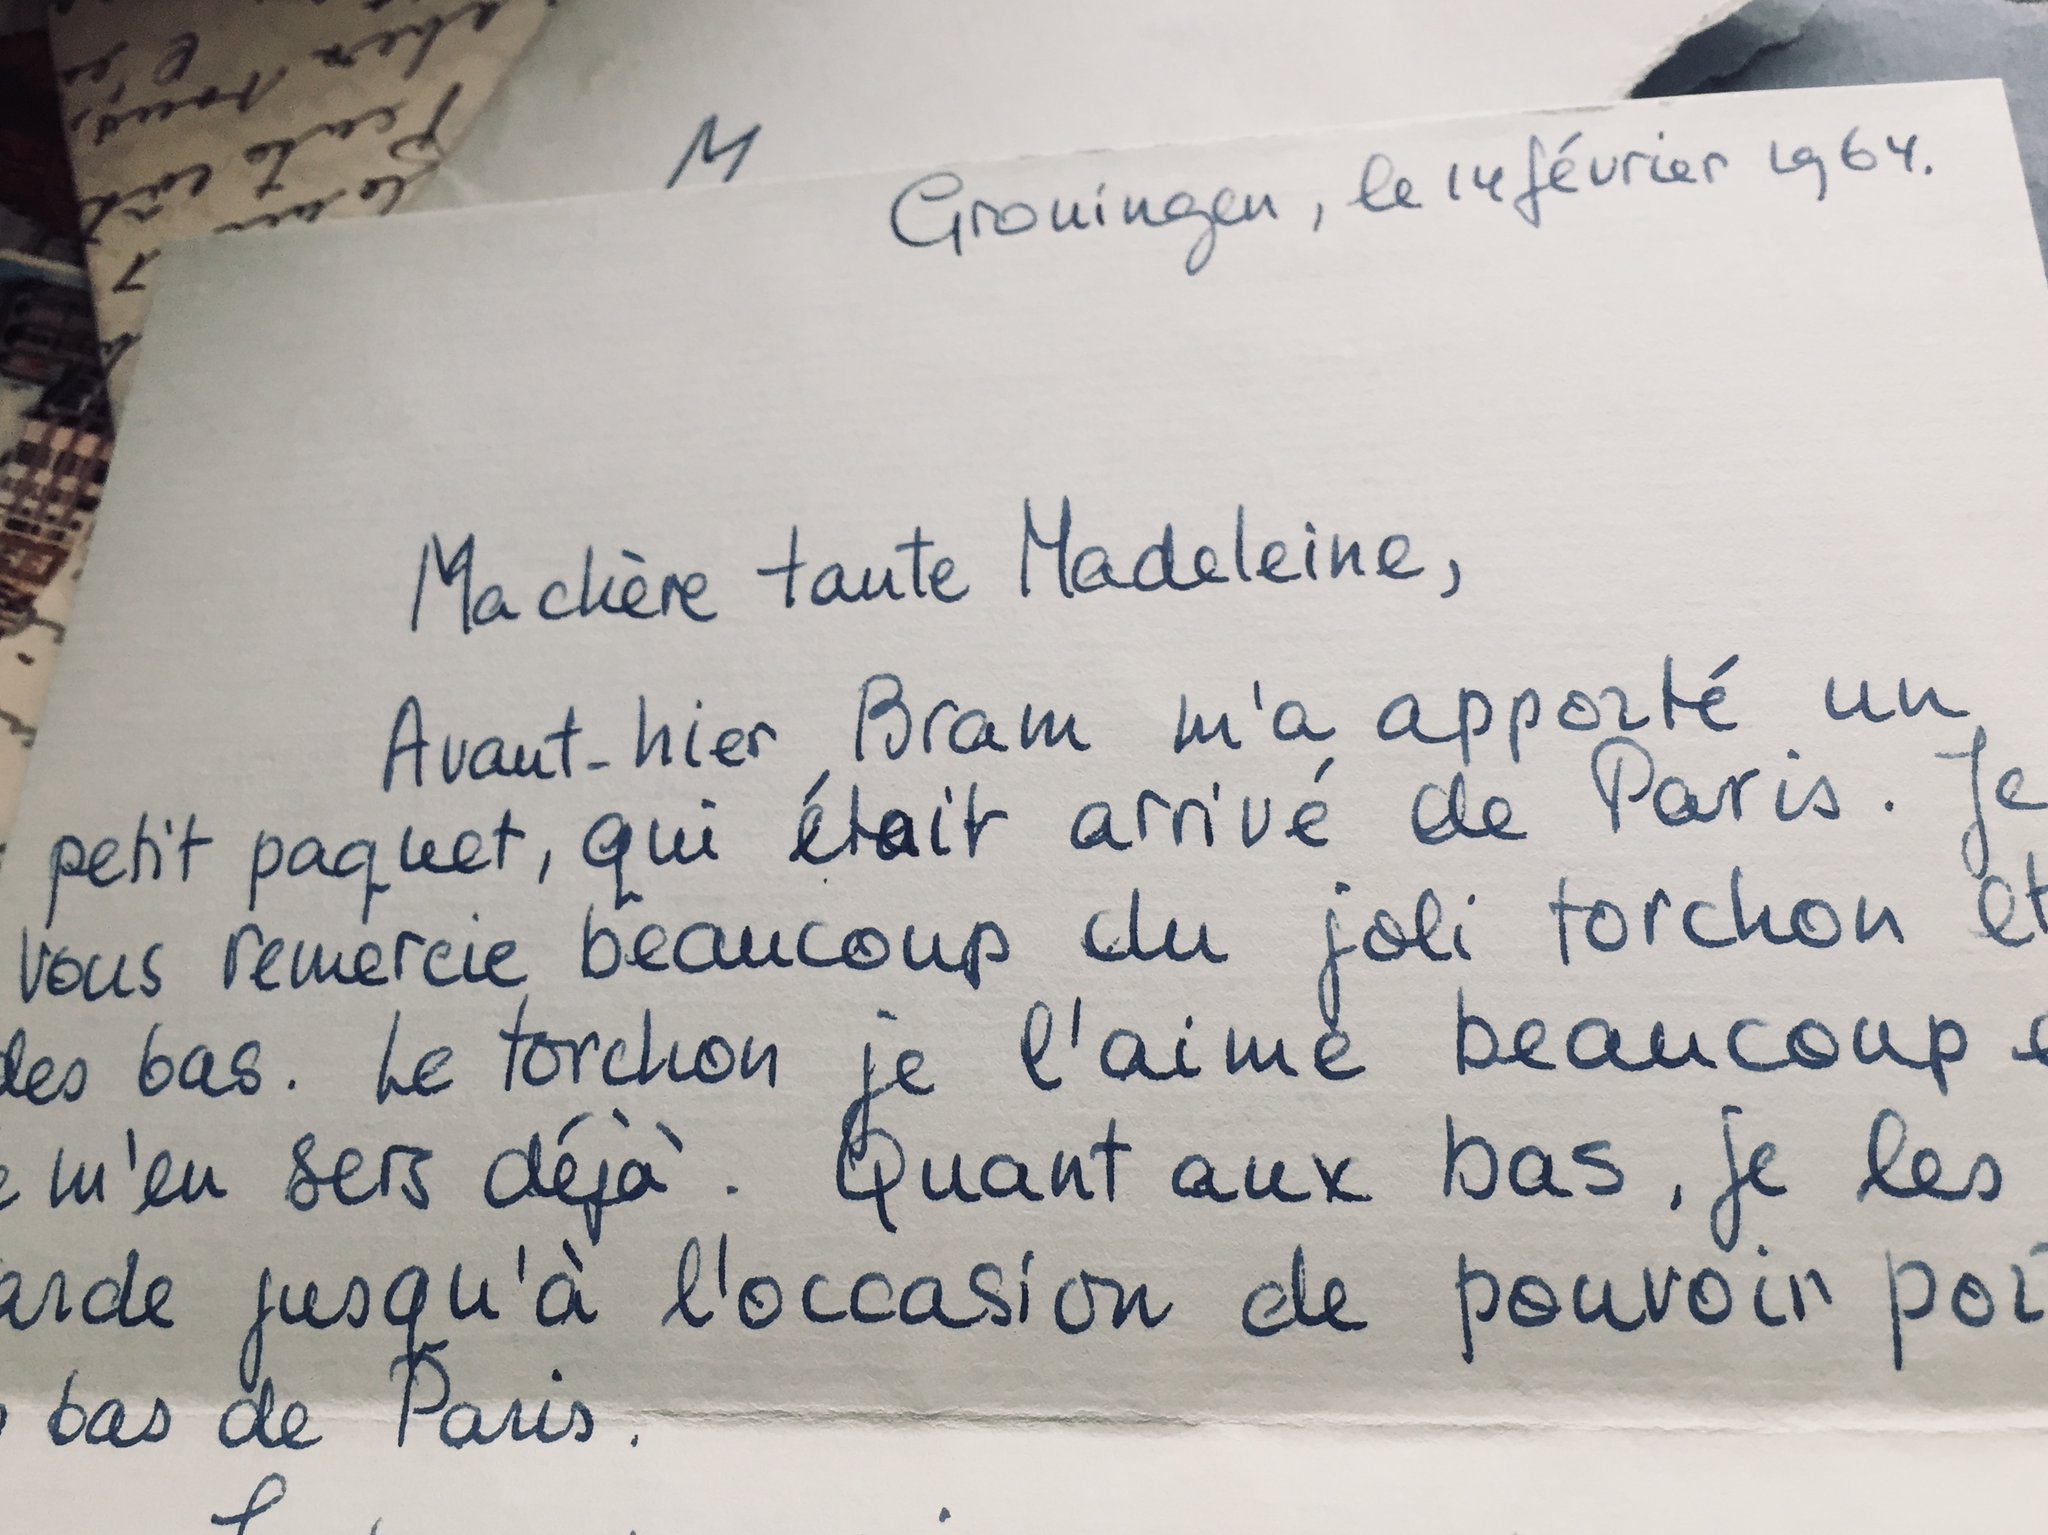 Puis en 1964, c'est Nellie qui écrit à Madeleine depuis Groningen : "Ma chère tante Madeleine" https://t.co/3kQNwWDXiA